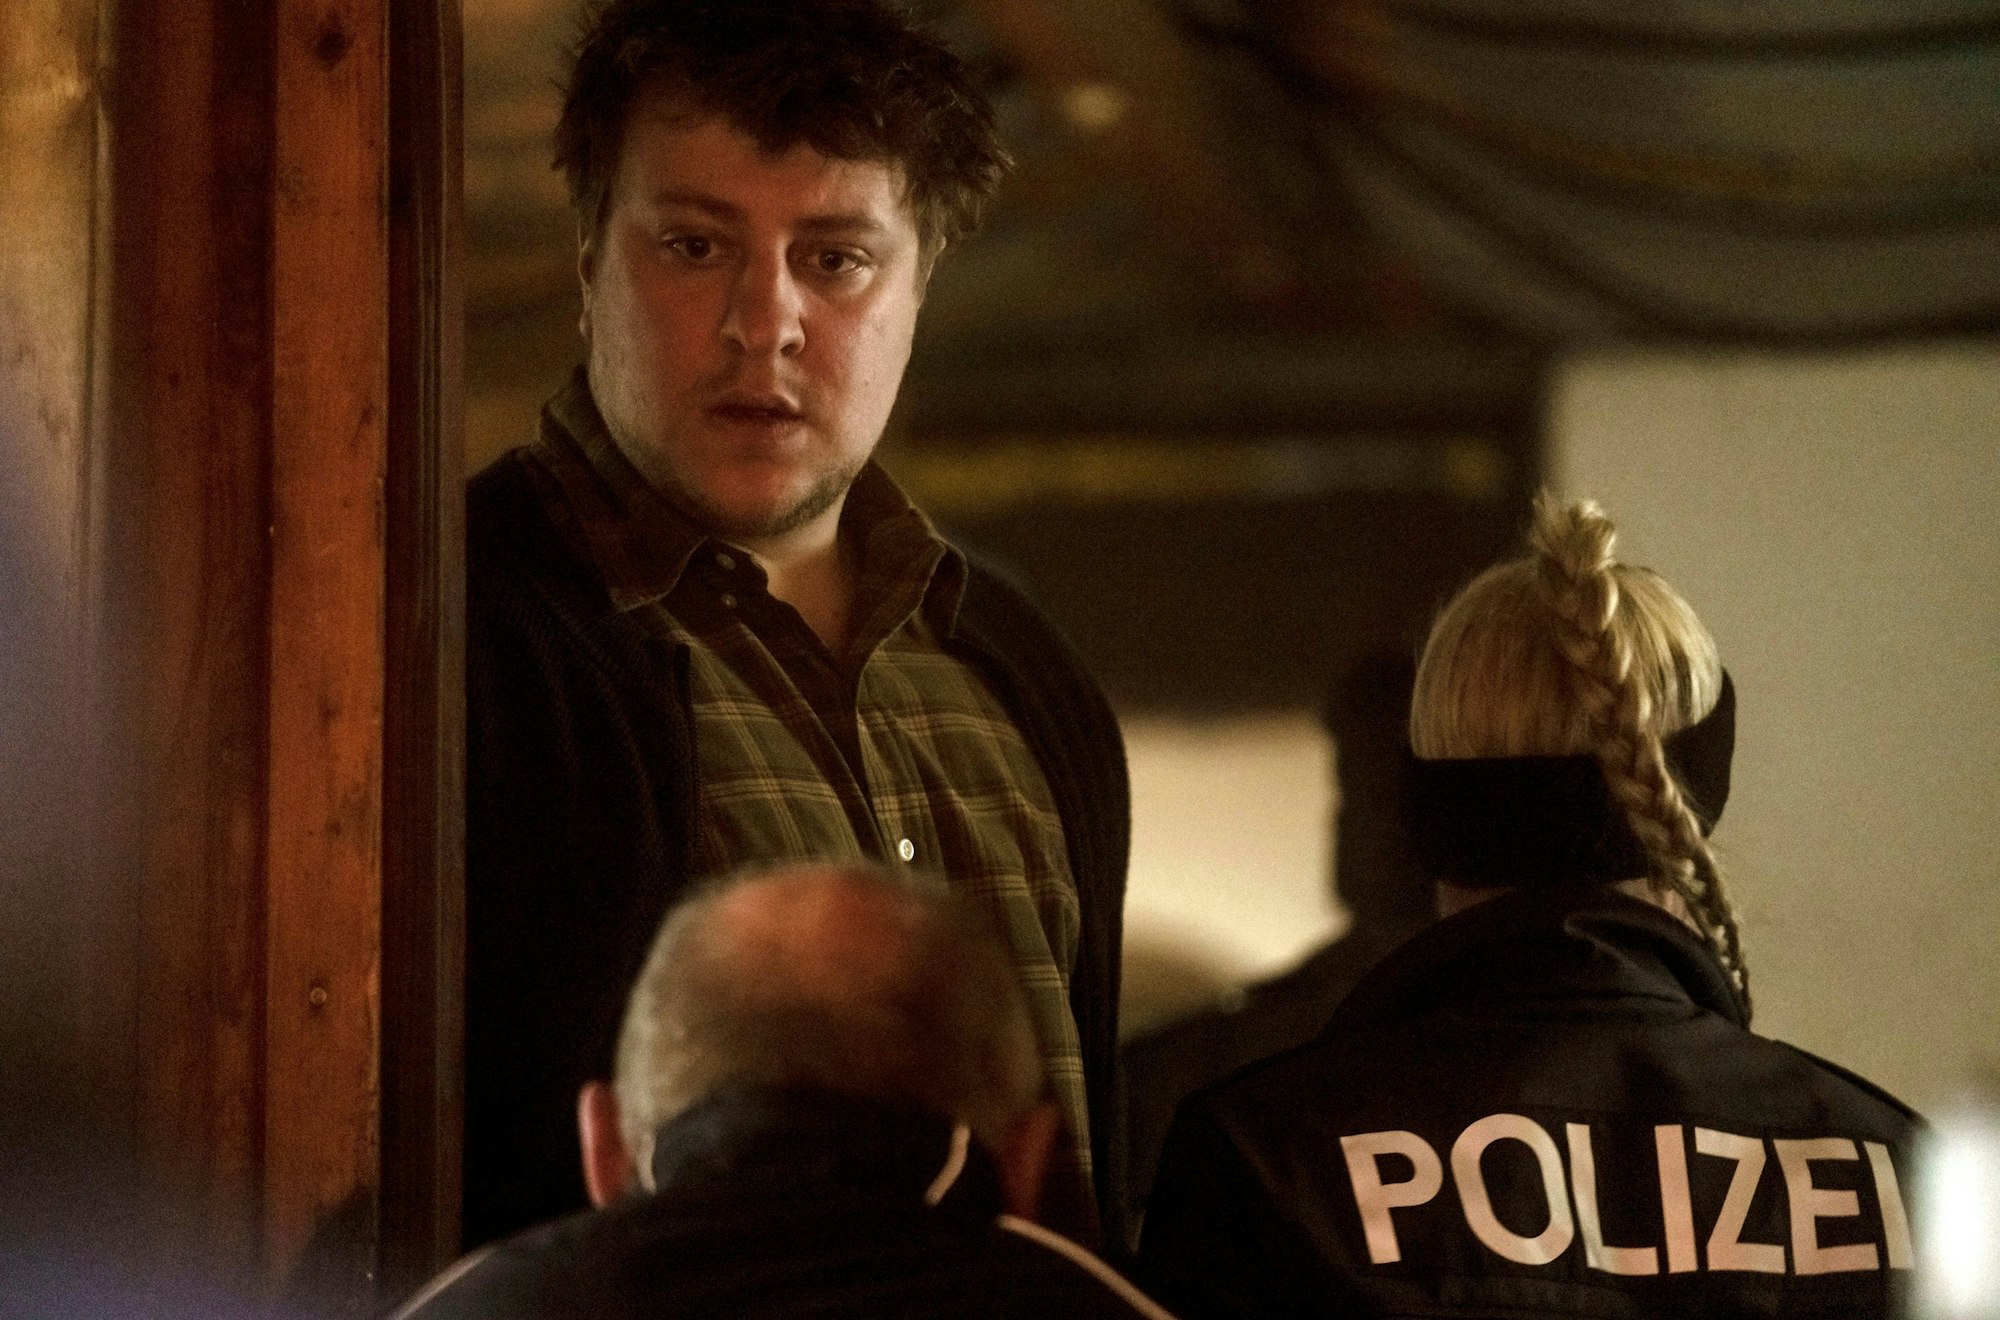 Matthias Precht schaut verdutzt, während Polizeibeamte an ihm vorbei in sein aus gehen. Der erzieher trägt ein mattgrünes, gestreiftes Hemd.